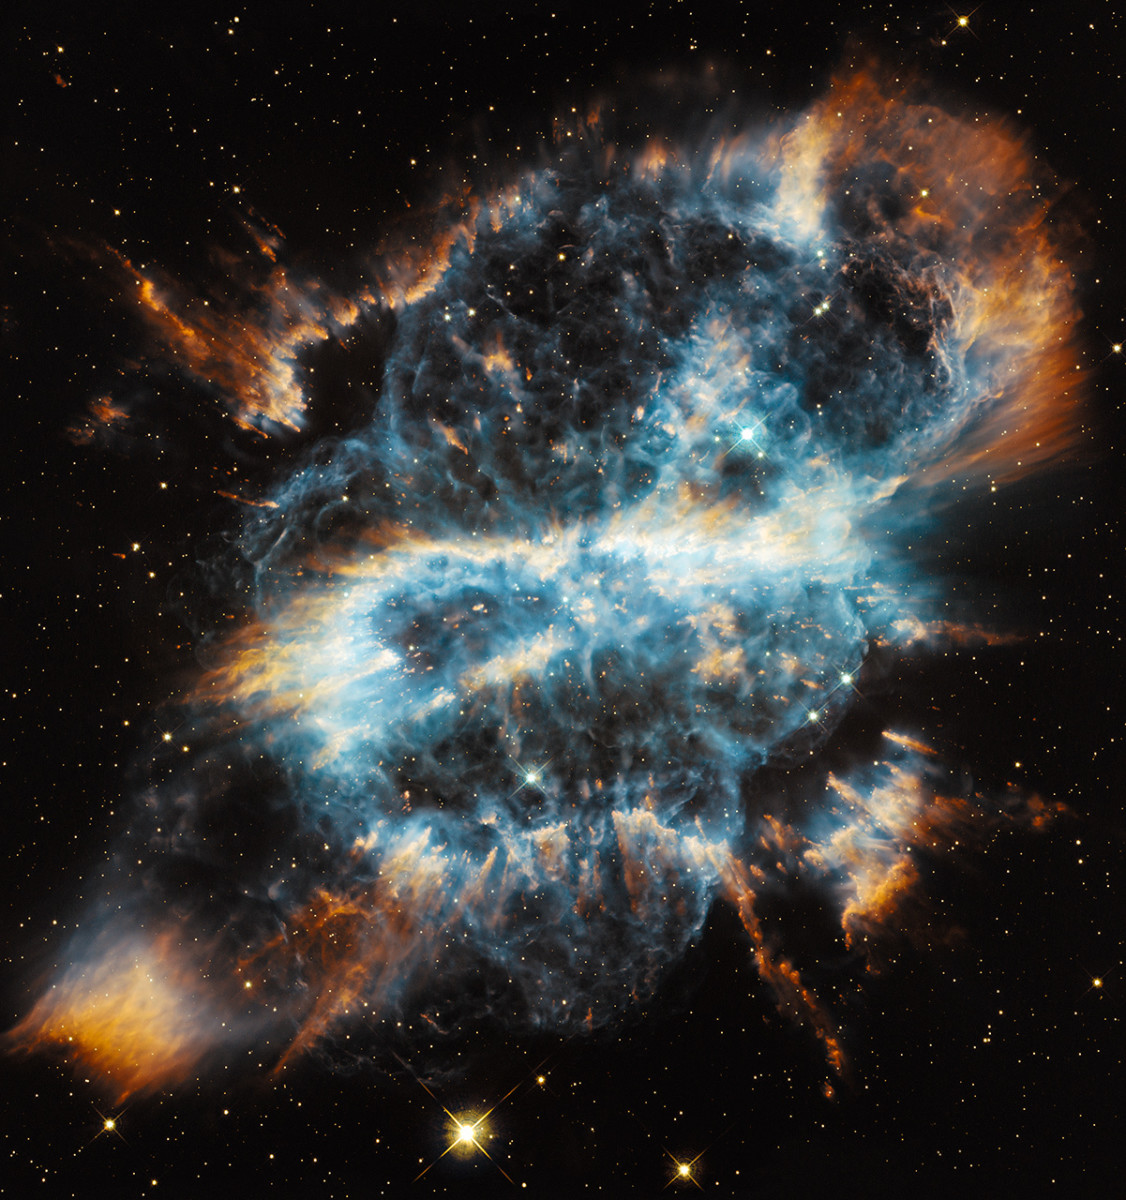 The Spiral Planetary Nebula, NGC 5189.